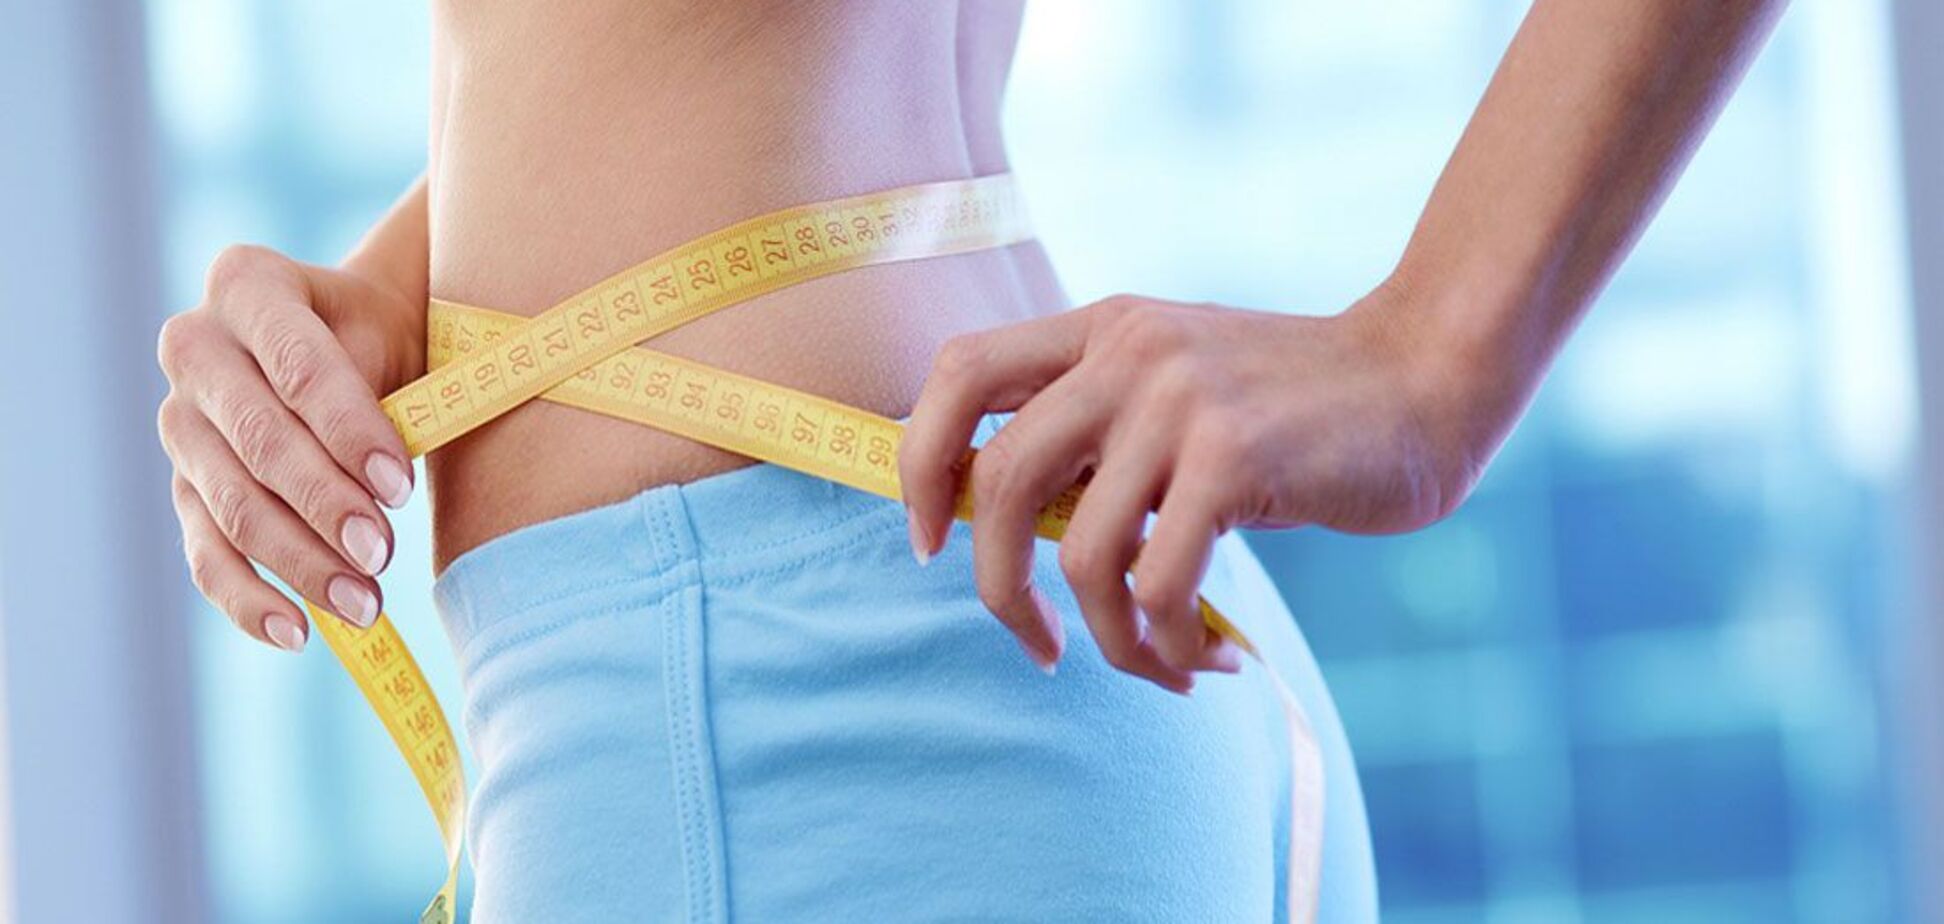 Похудевшая на 40 кг женщина раскрыла секрет быстрого снижения веса